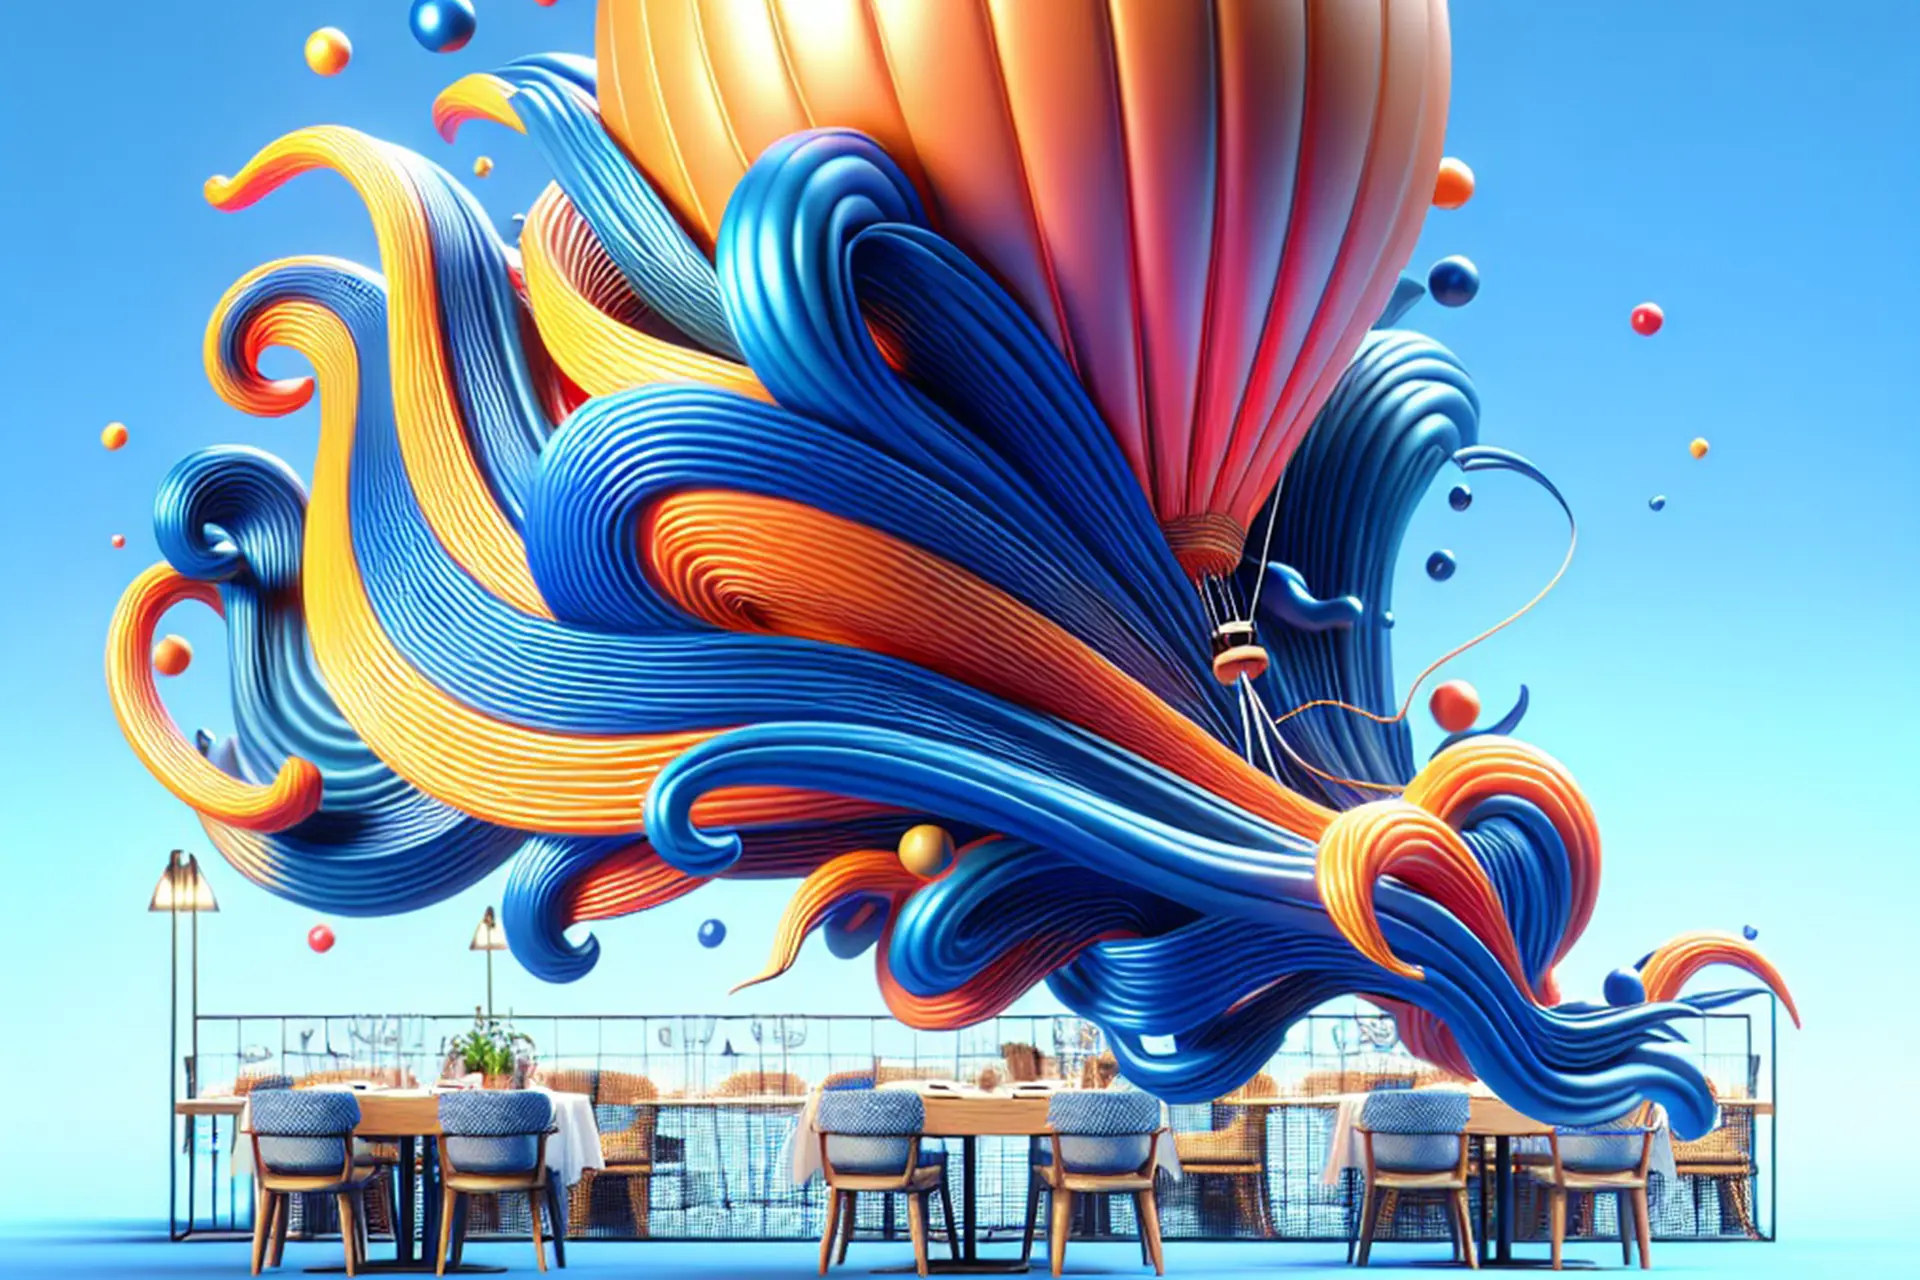 Mesa de restaurante moderna con decoración artística de globos y olas de colores